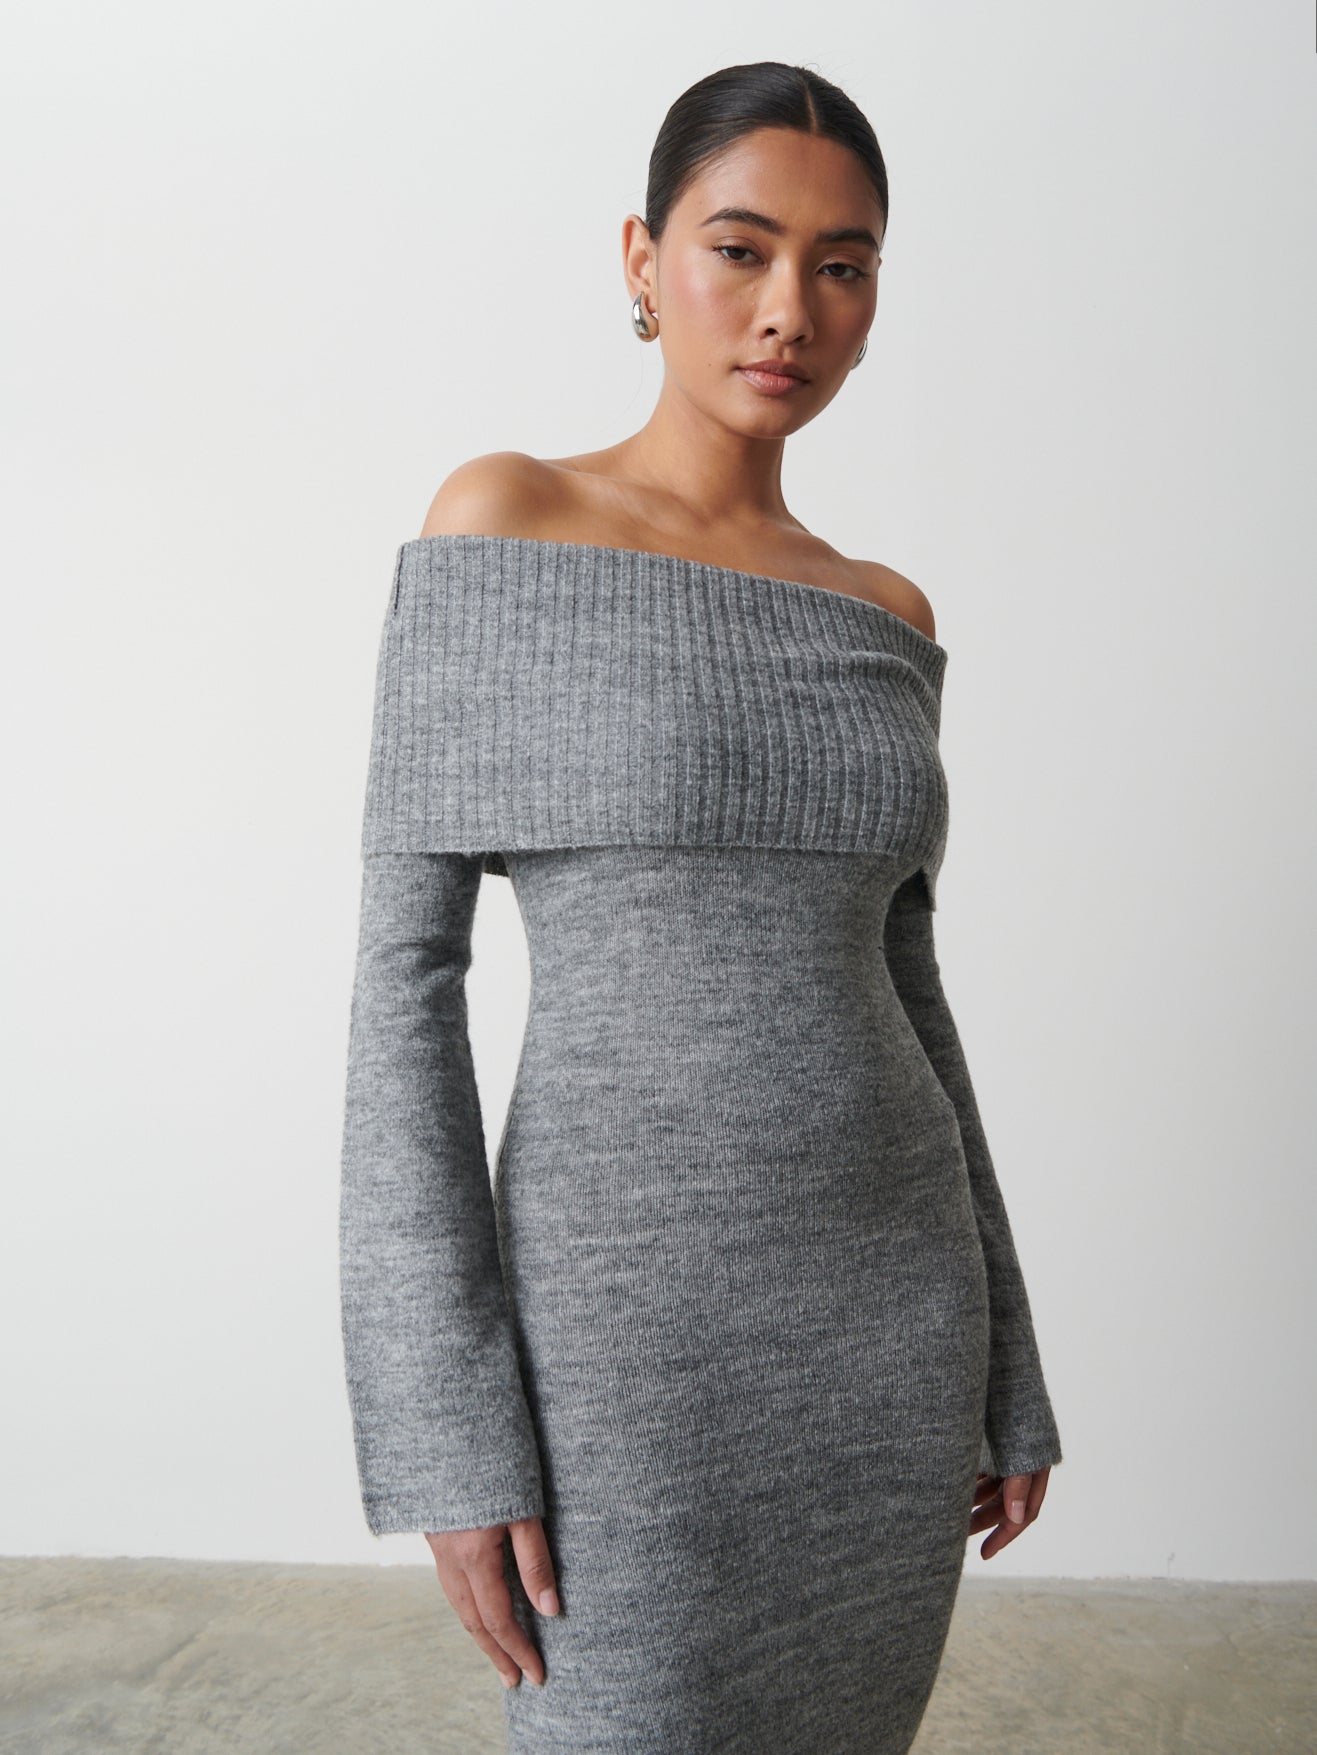 Soreya Bardot Soft Knit Dress - Charcoal